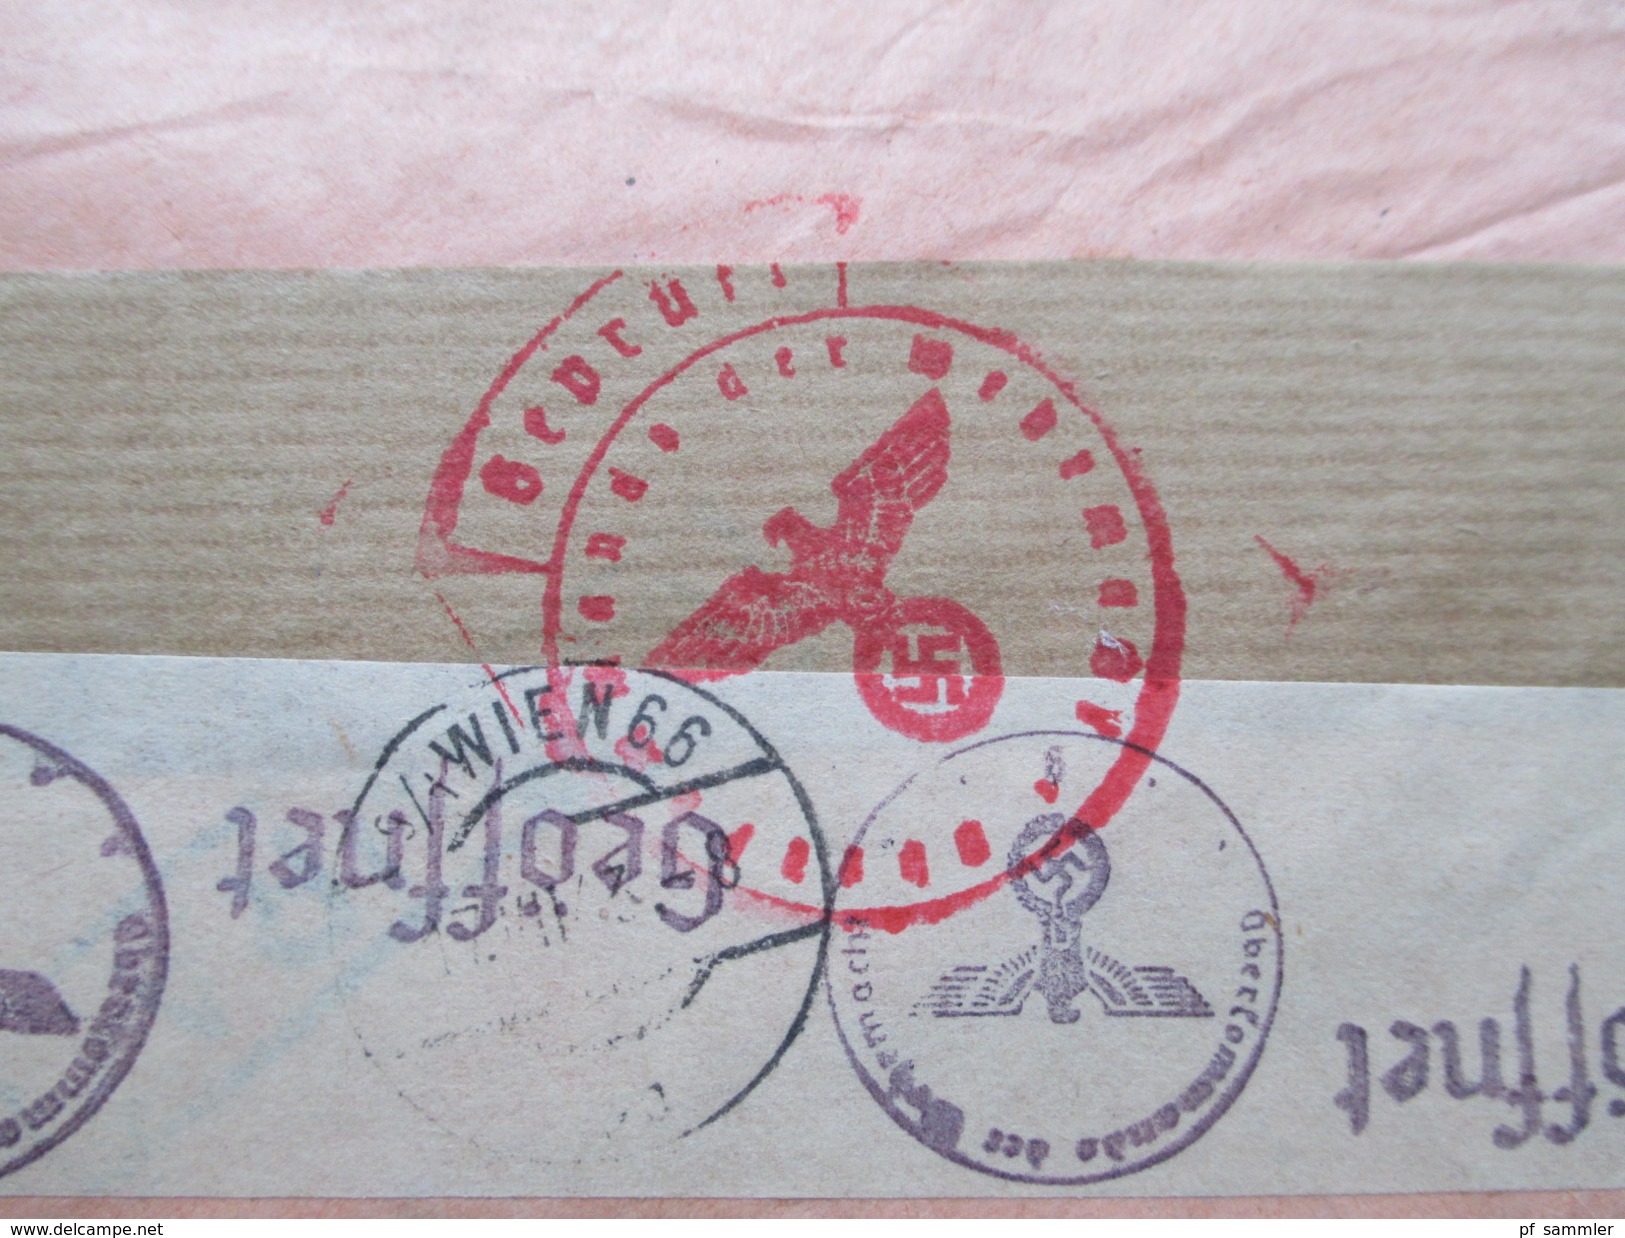 Rumänien 1943 Zensurbeleg/R-Brief Sibu-Wien. Viele Vermerke / Mehrfachzensur der Wehrmacht! Institutul da Studil Clasico